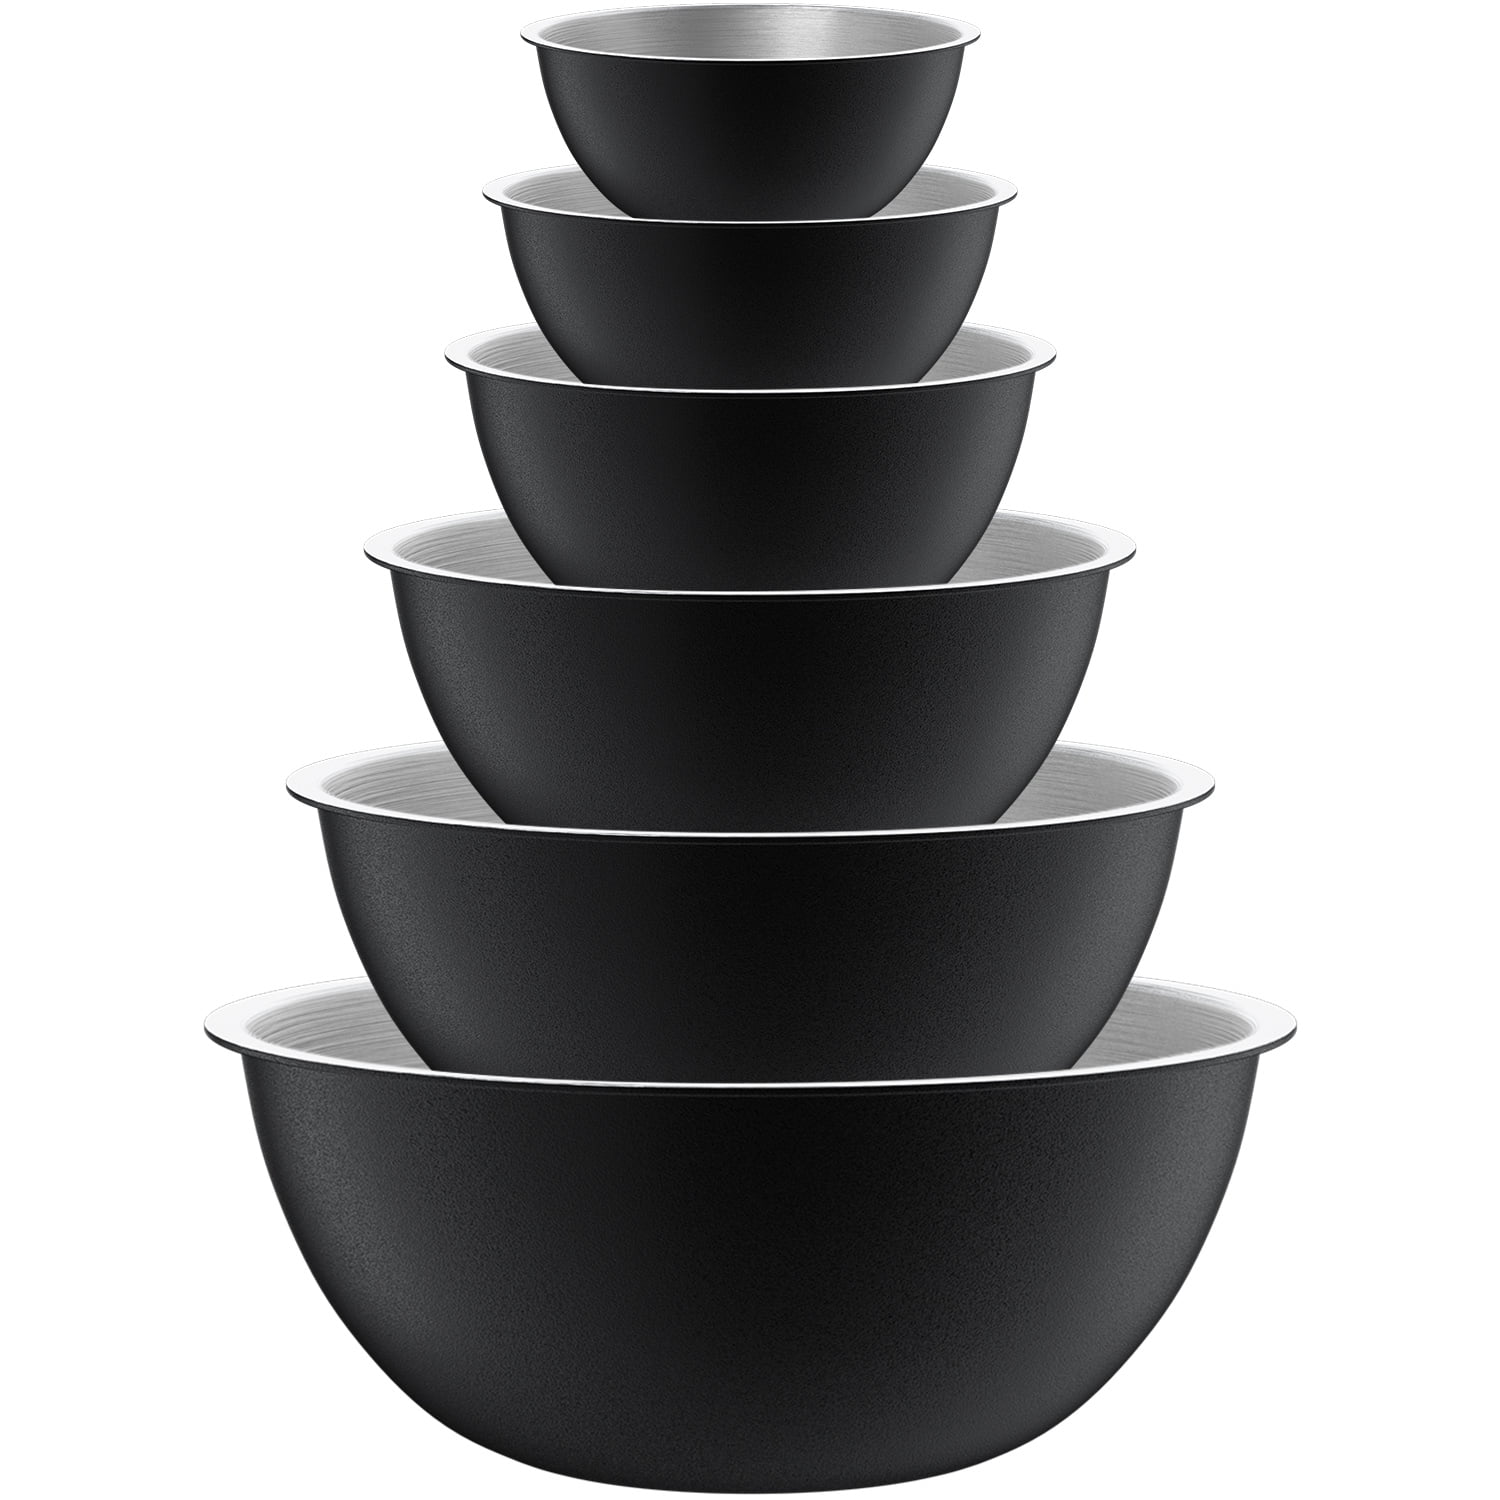 Mainstays 6-Piece Nonslip Bowl Set, 3 Bowls, 3 Lids, Black Non